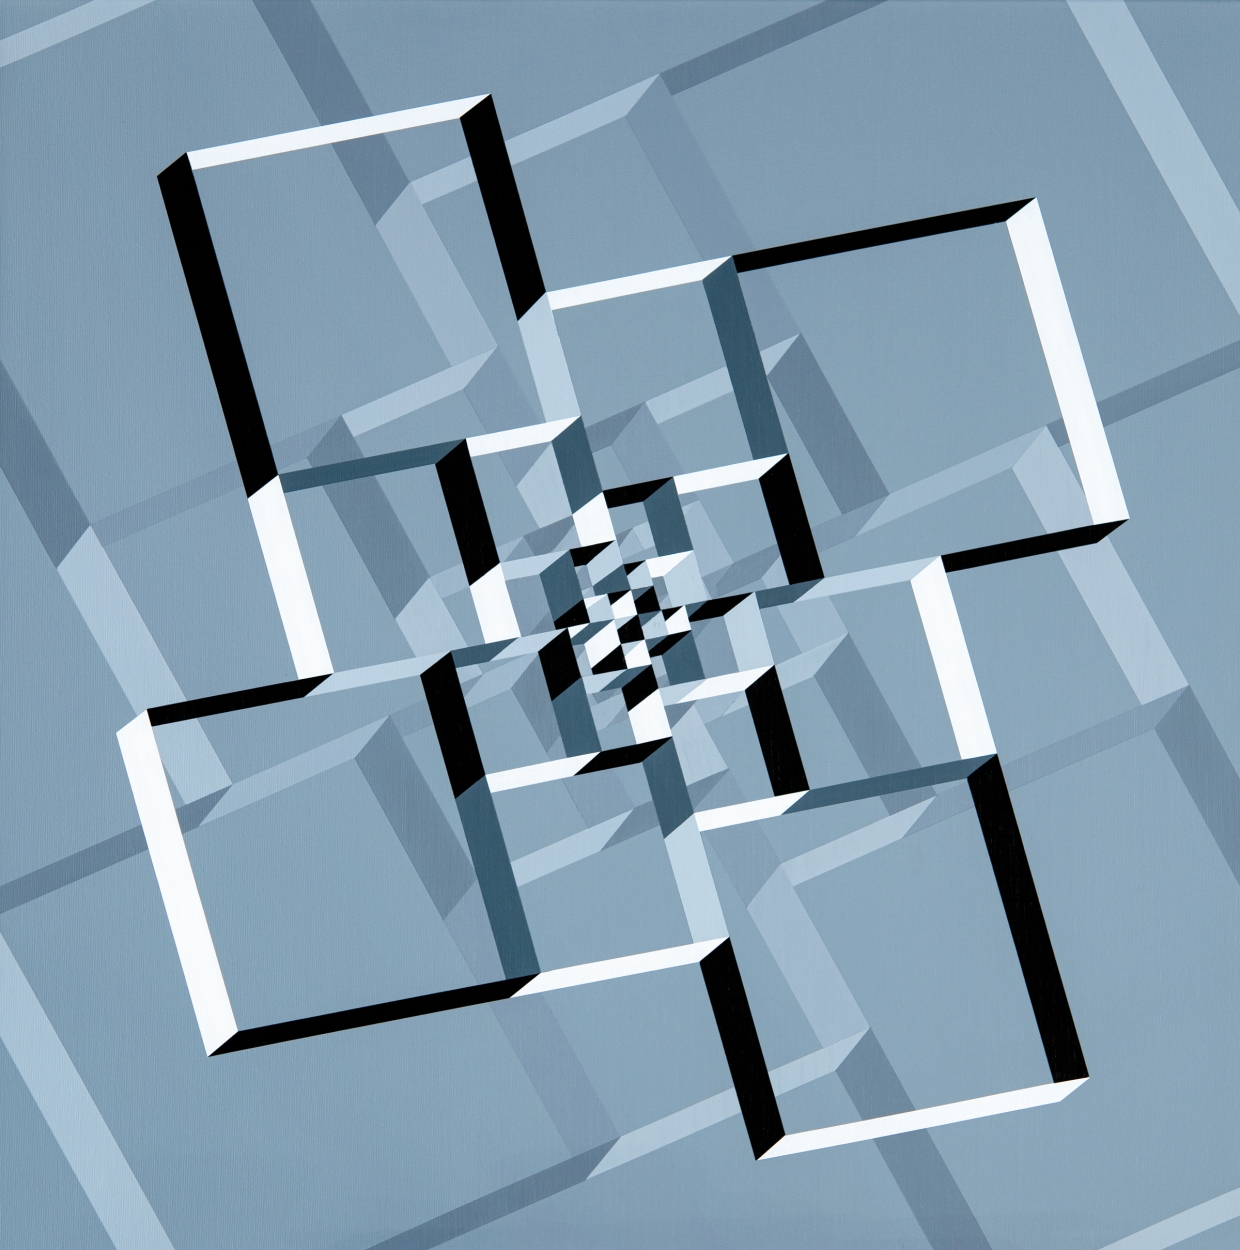  Ottó László: Living-spiral-space (Conceptual-geometry), No. 17, 2020